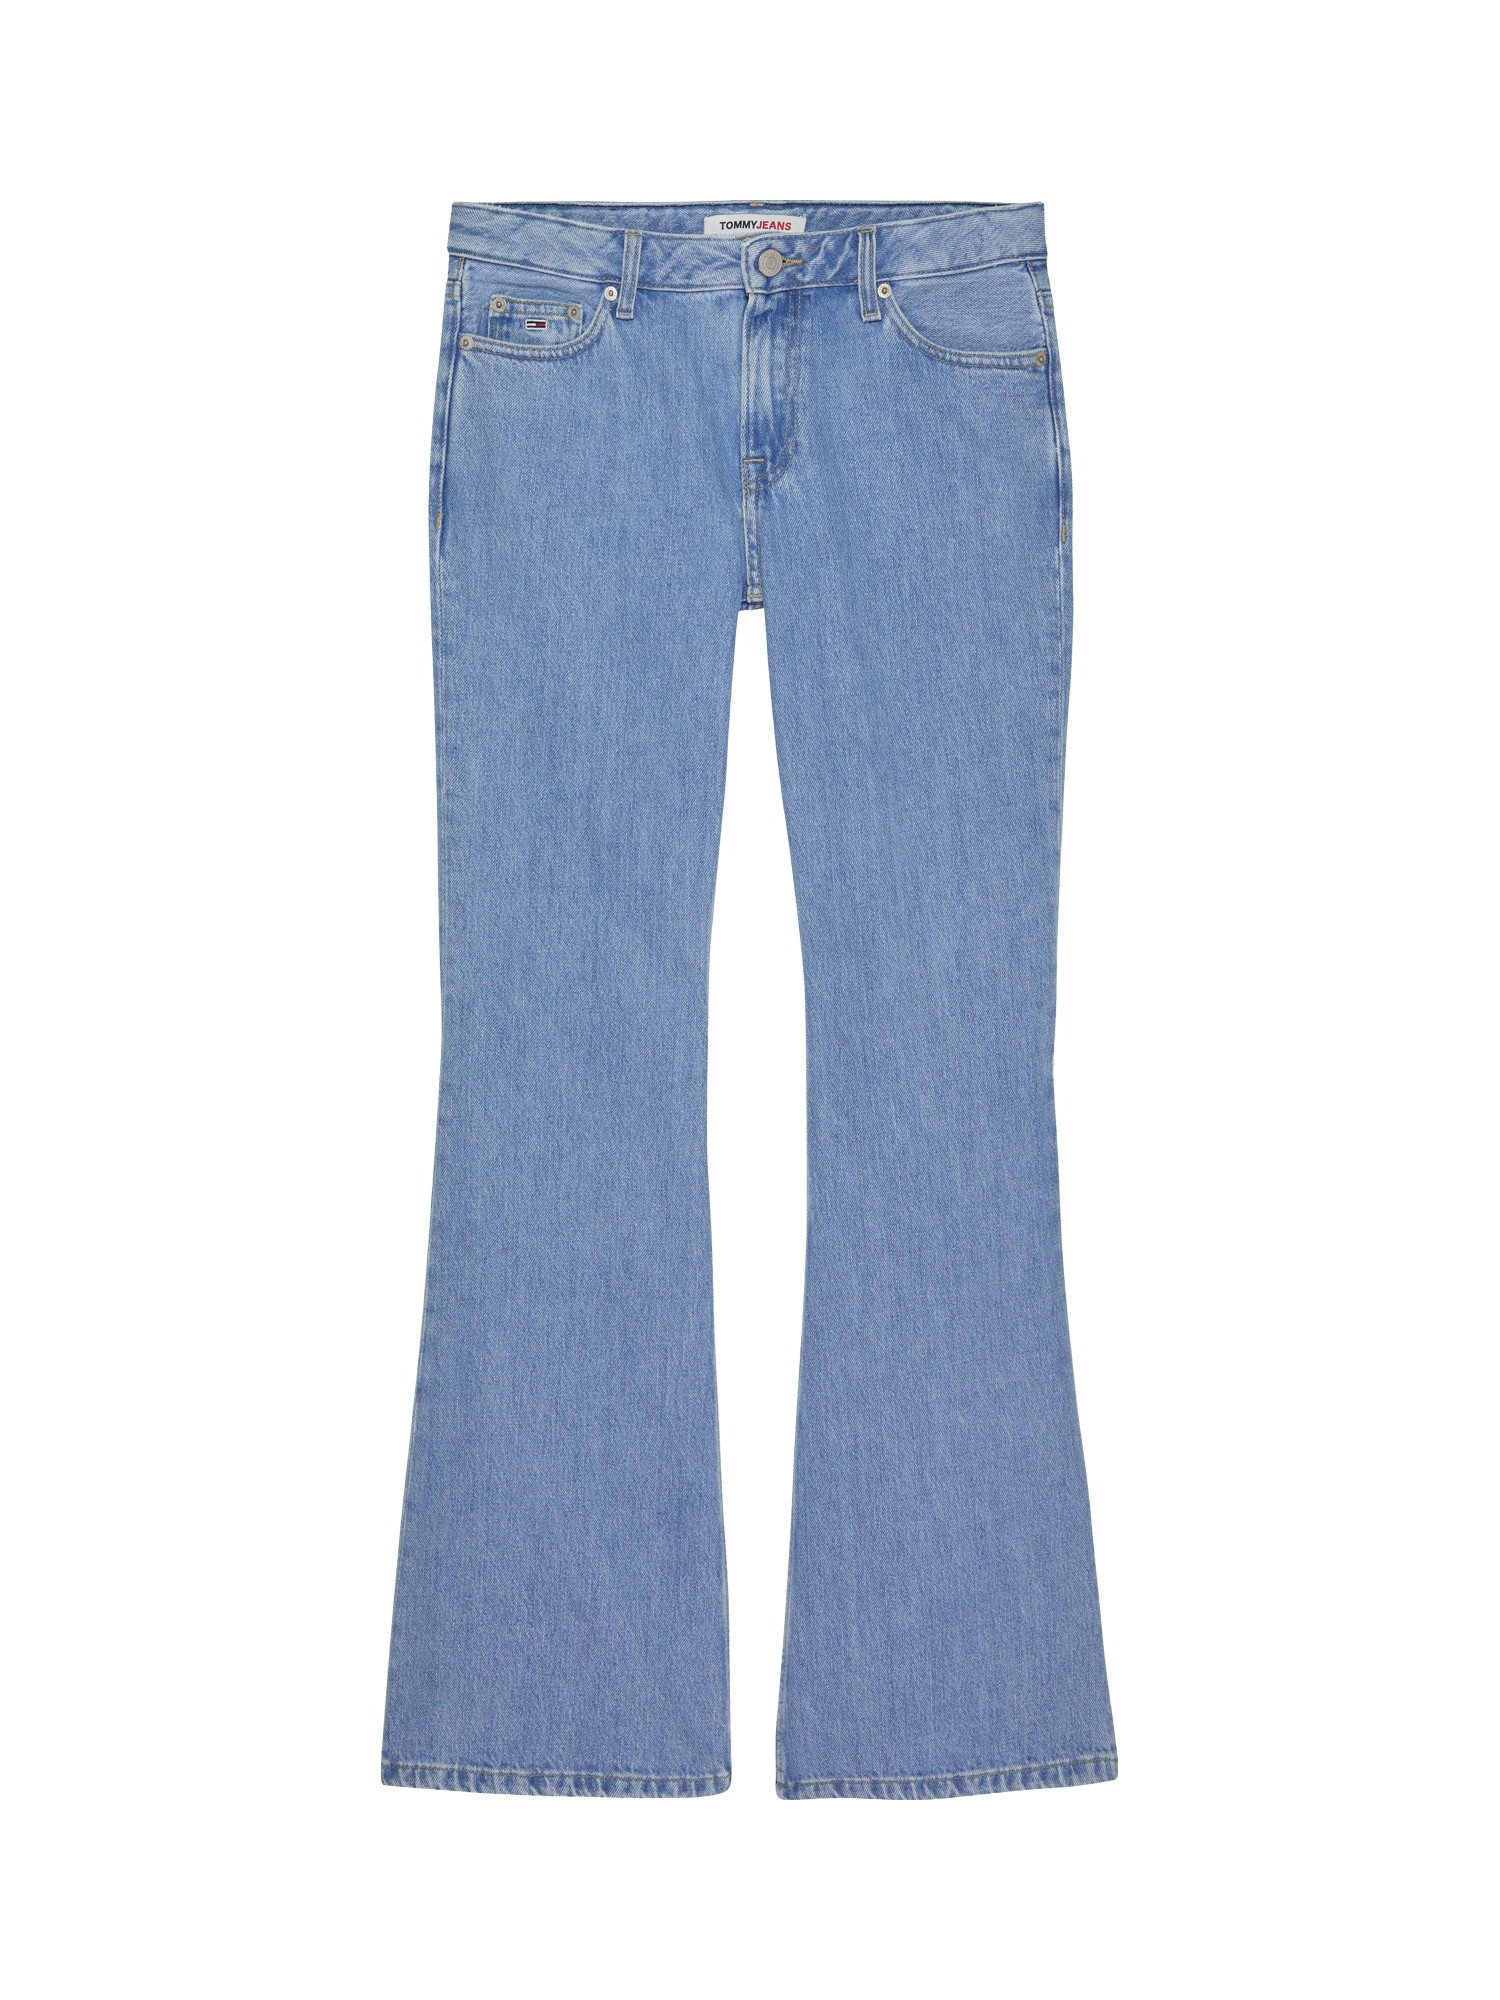 Tommy Jeans - Low rise five pocket jeans, Denim, large image number 0